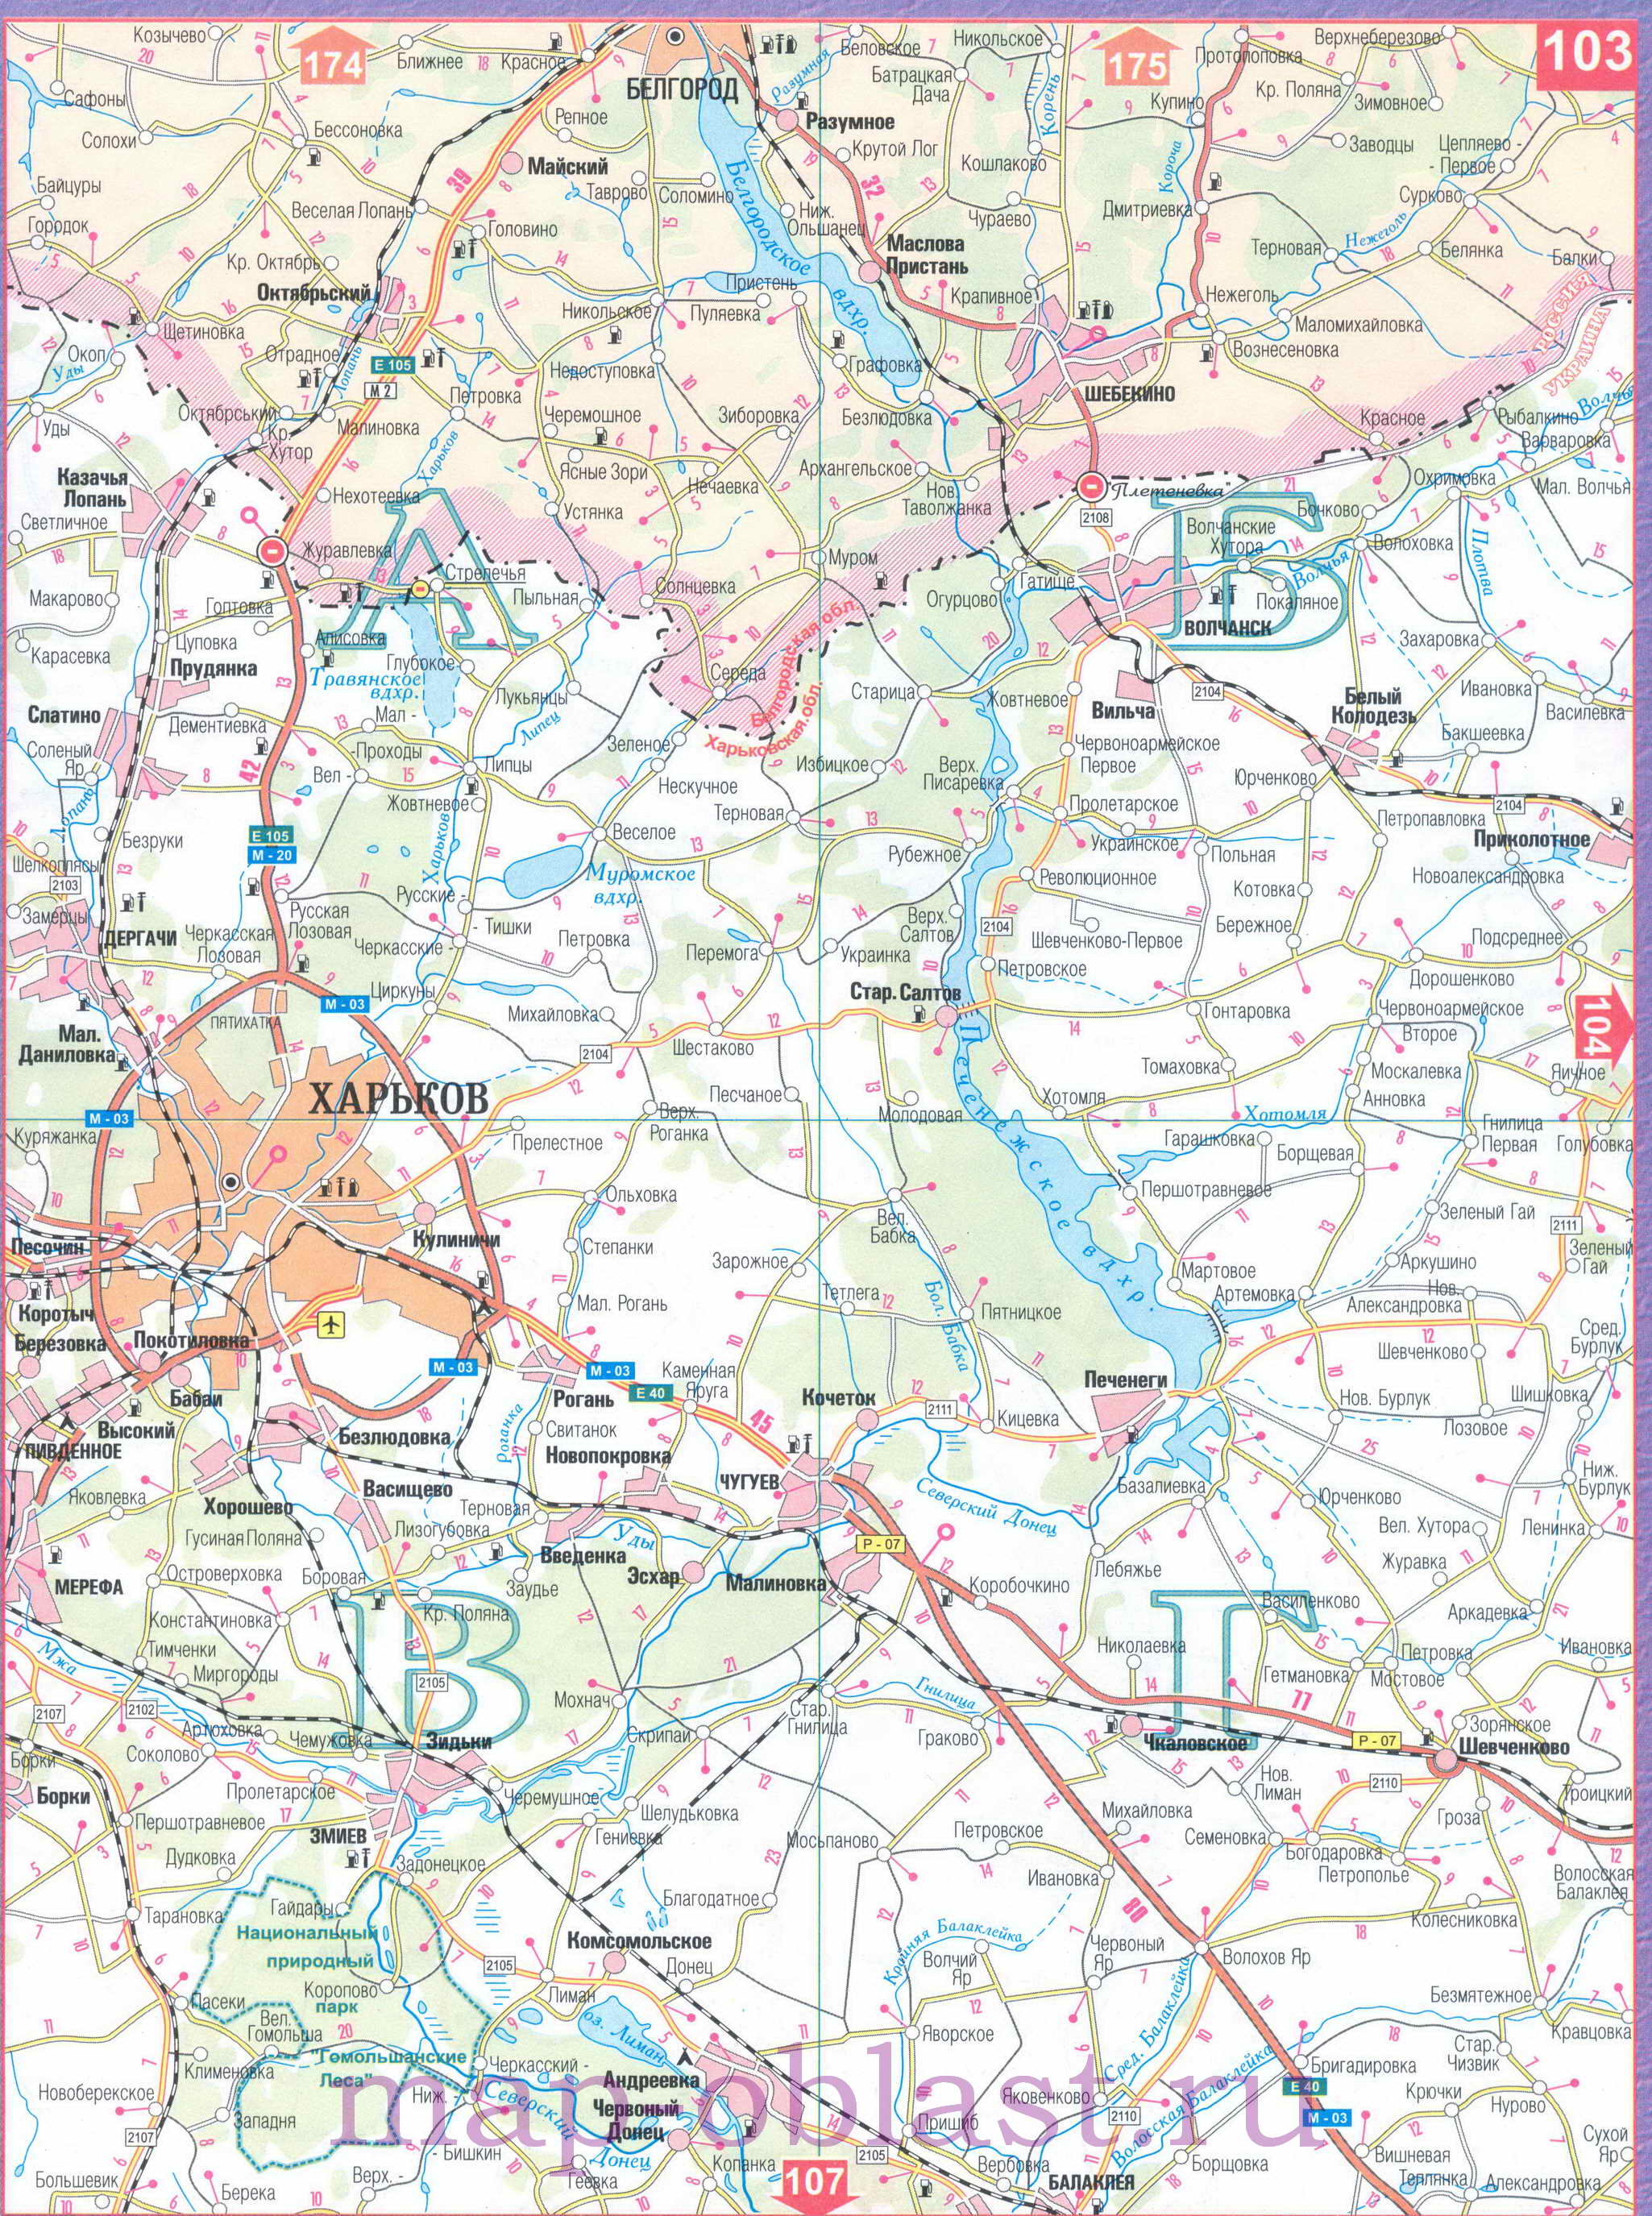 Автомобильная карта Восточной Украины - Харьковская область. Большая подробная карта Харьковской области, B0 - 